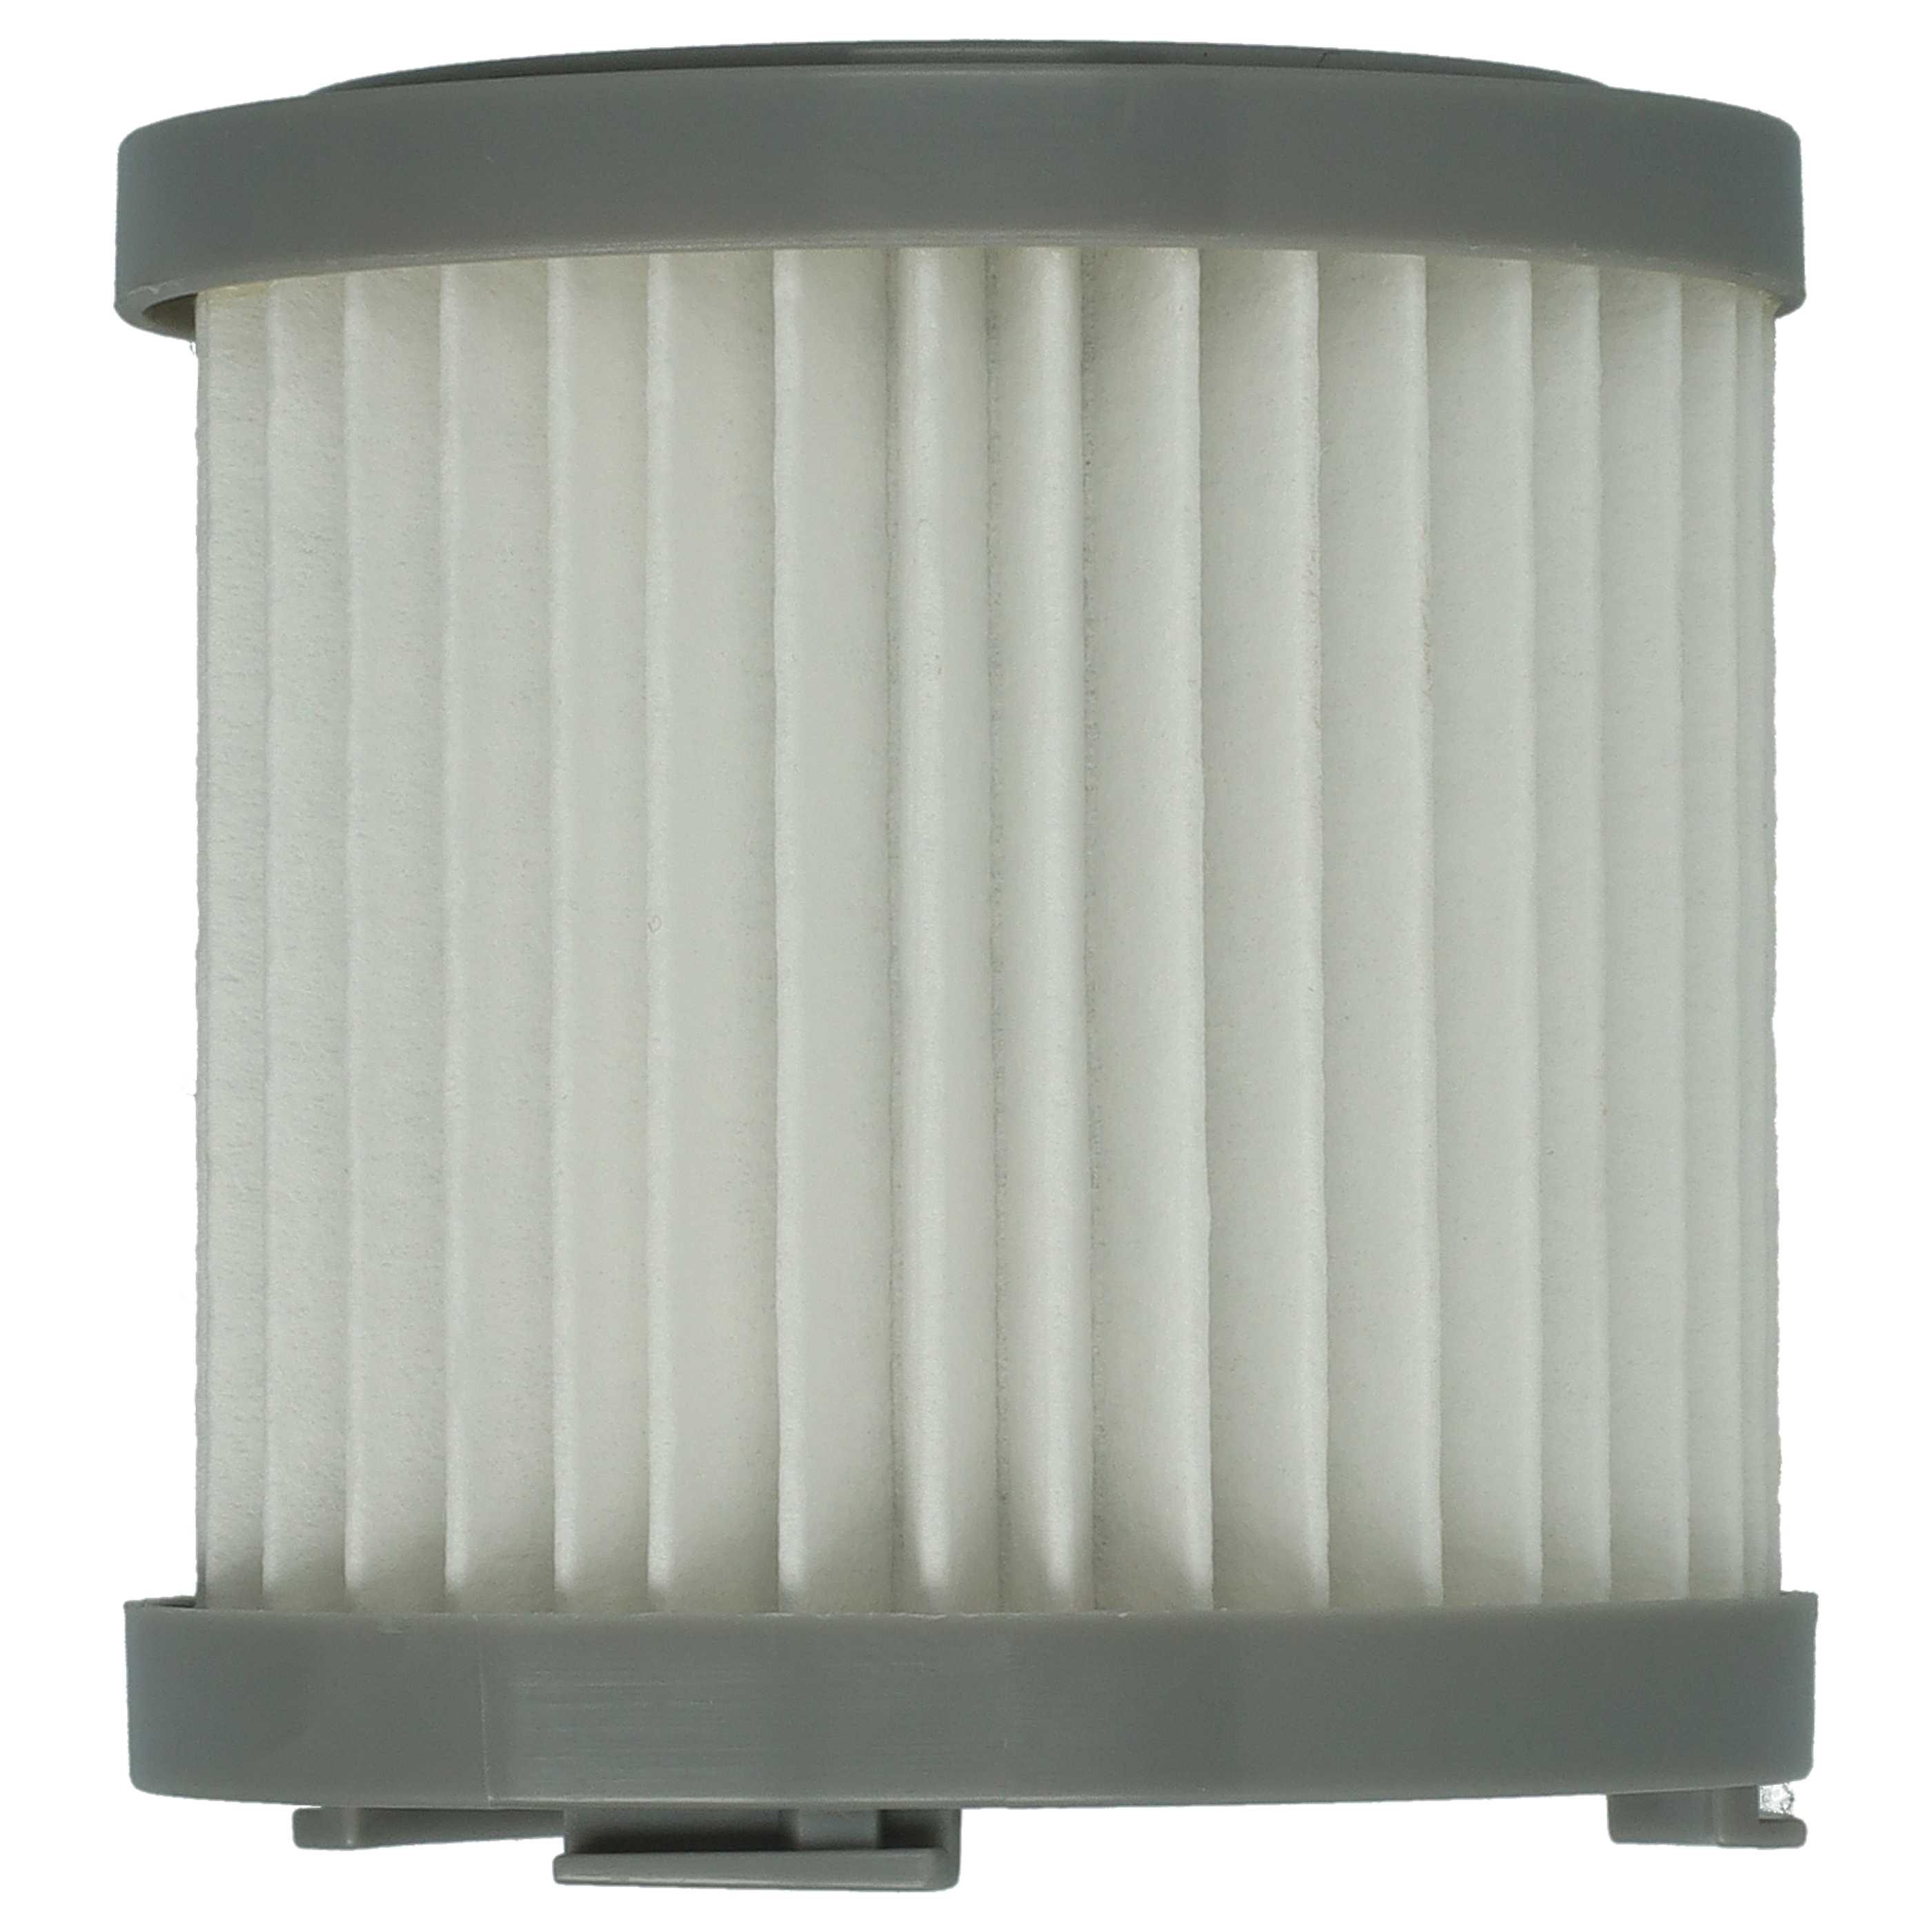 Filtro sostituisce AEG 4055453288 per aspirapolvere - filtro HEPA, bianco / grigio